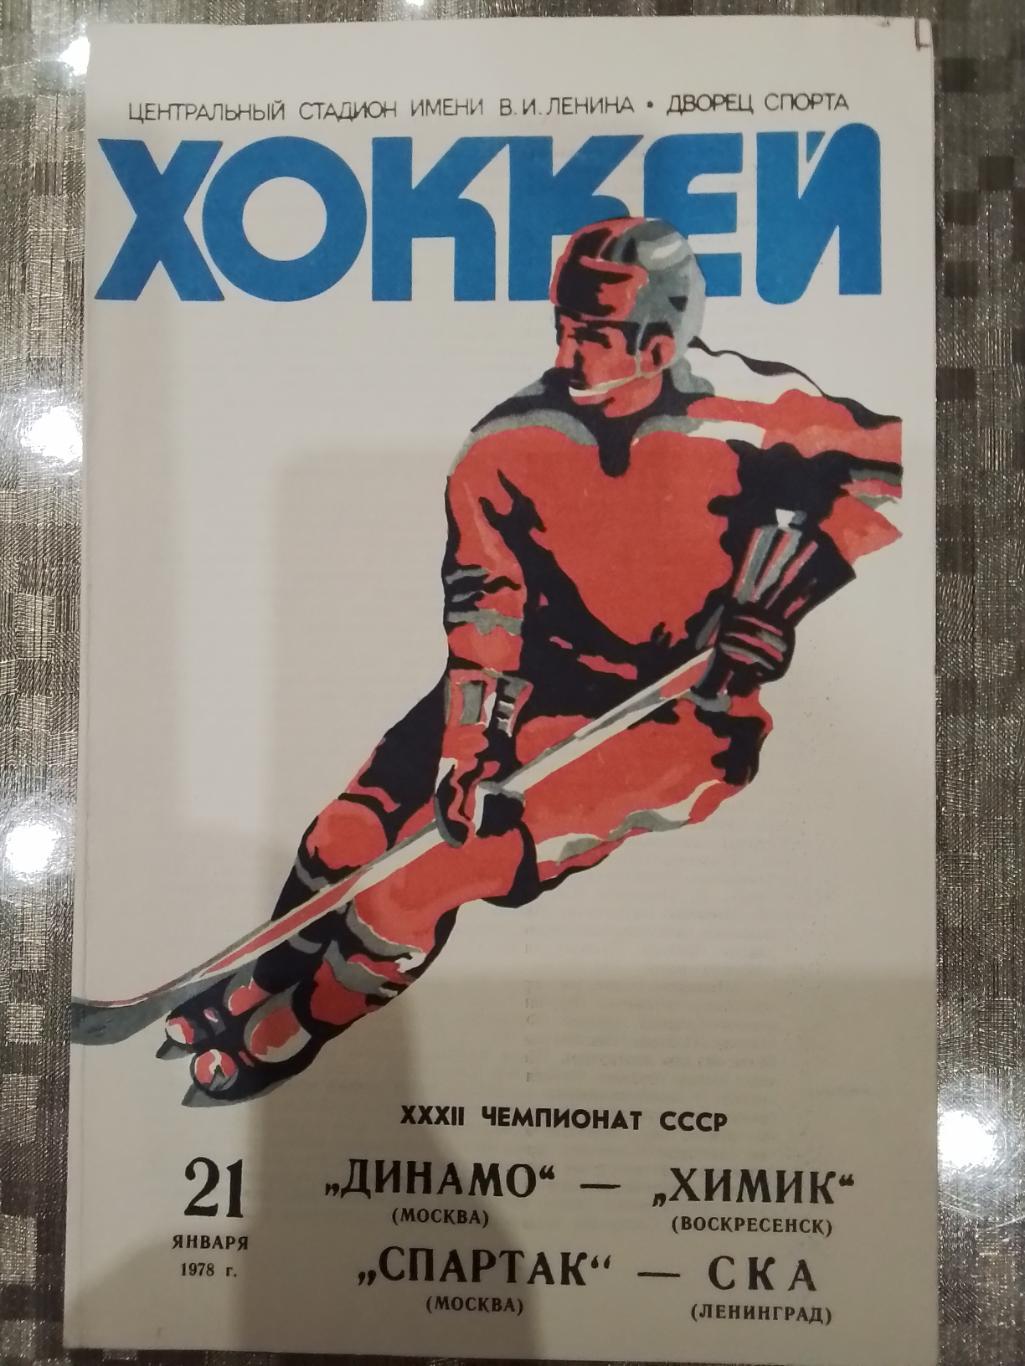 Динамо(Москва)- Химик(Воскресенск)+Спартак(Москва)-СКА 21.01.1978